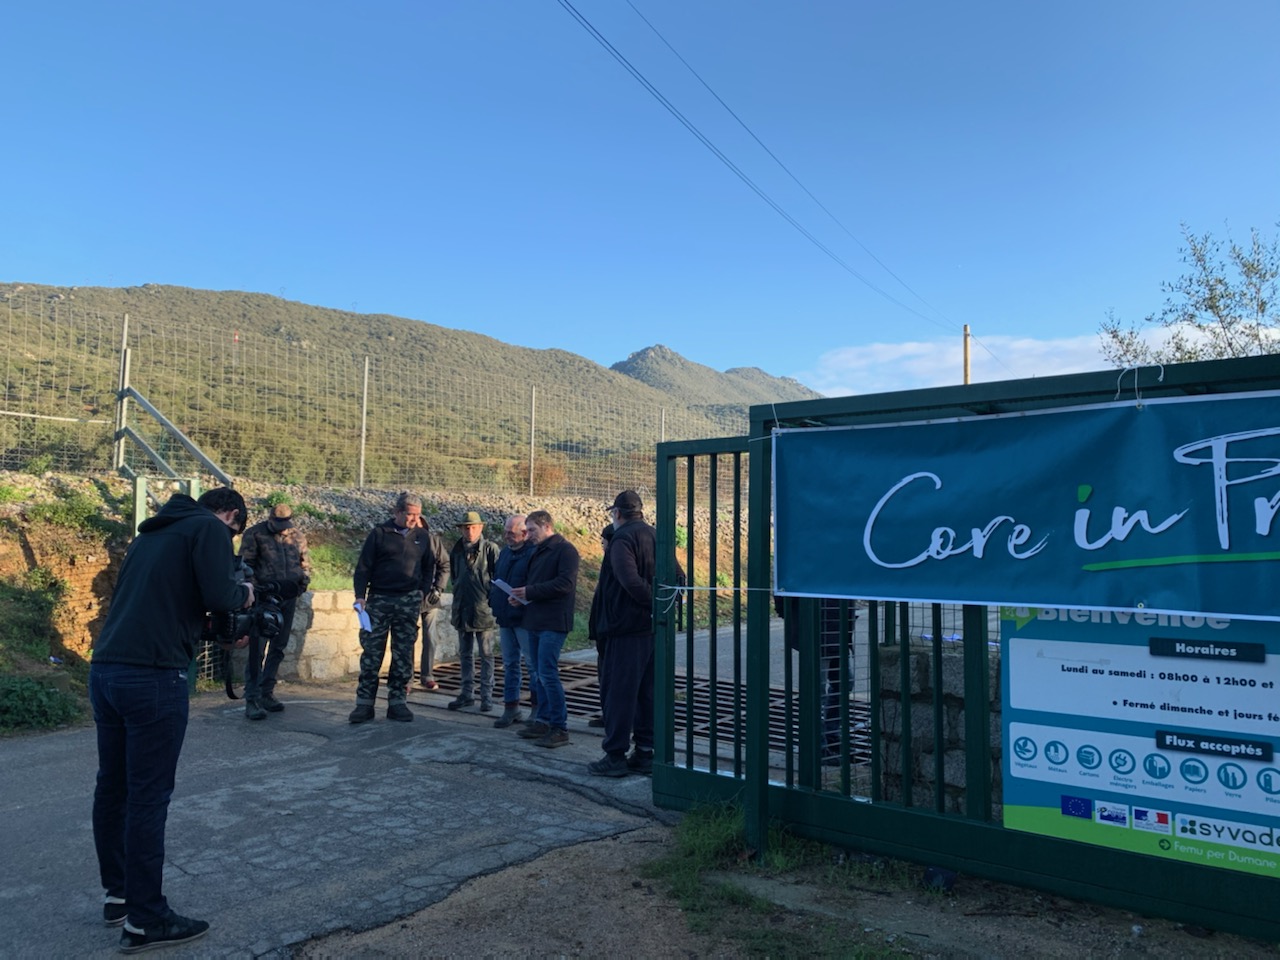 Crise de déchets : Core in Fronte débloque l'accès à Viggianello